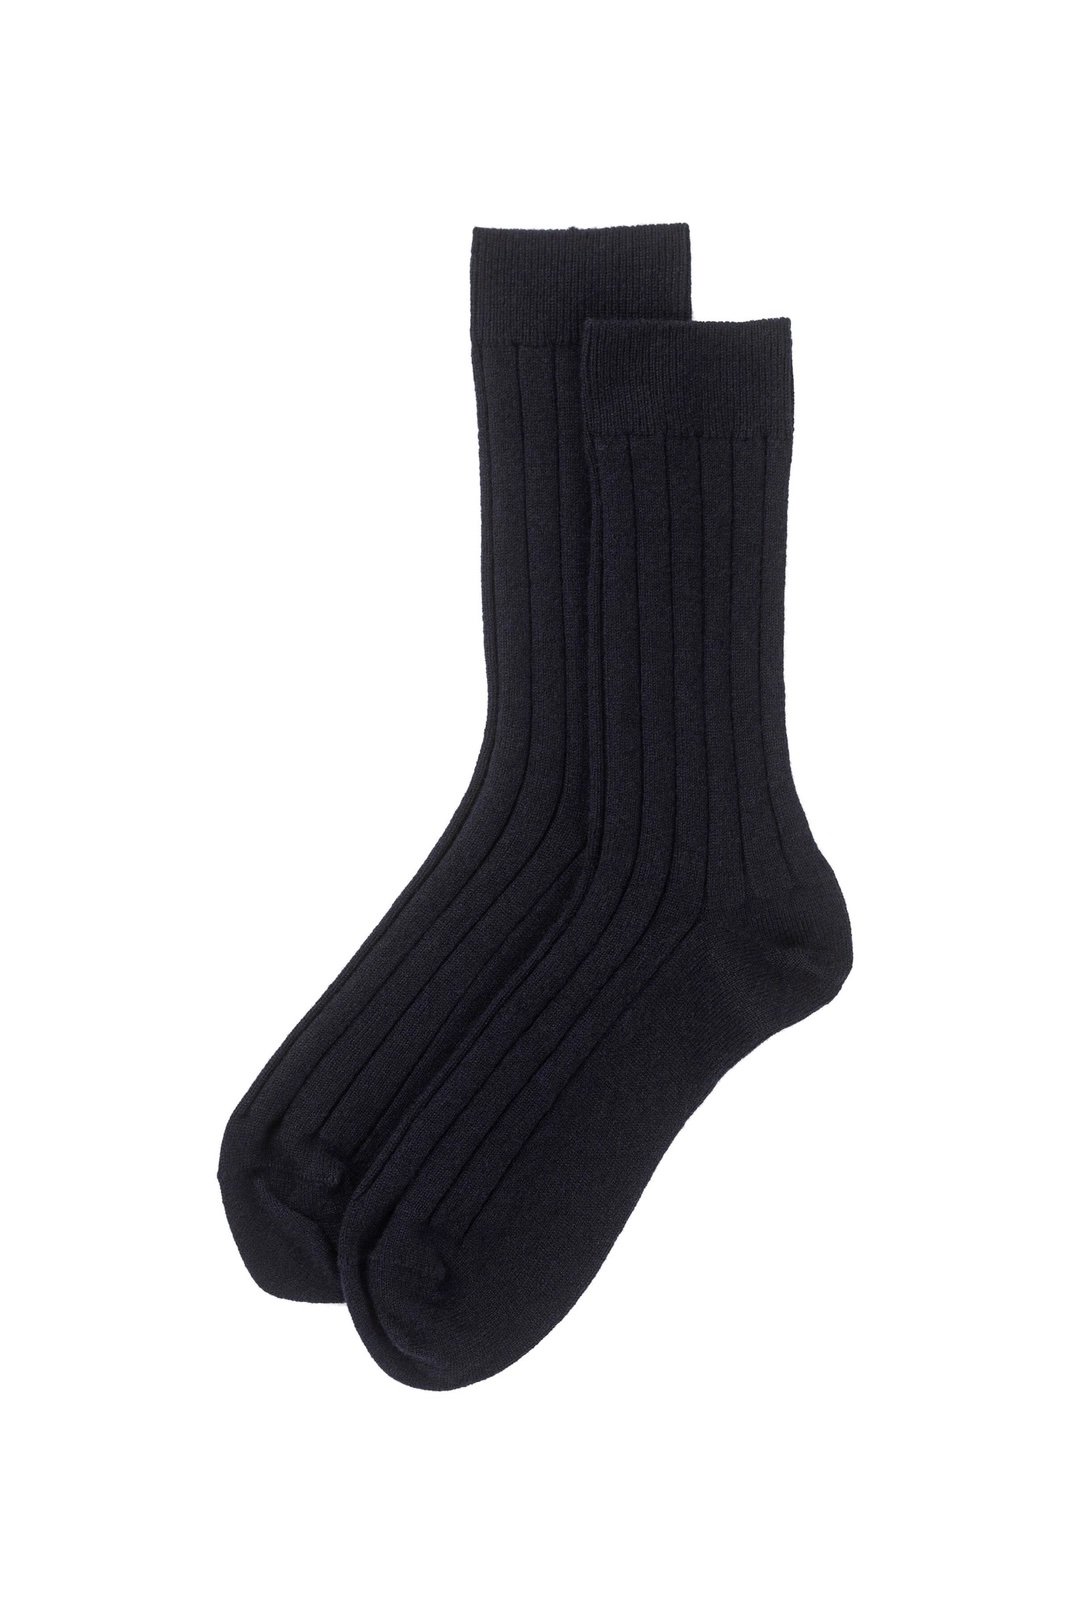 Johnstons of Elgin Men's Cashmere Ribbed Socks